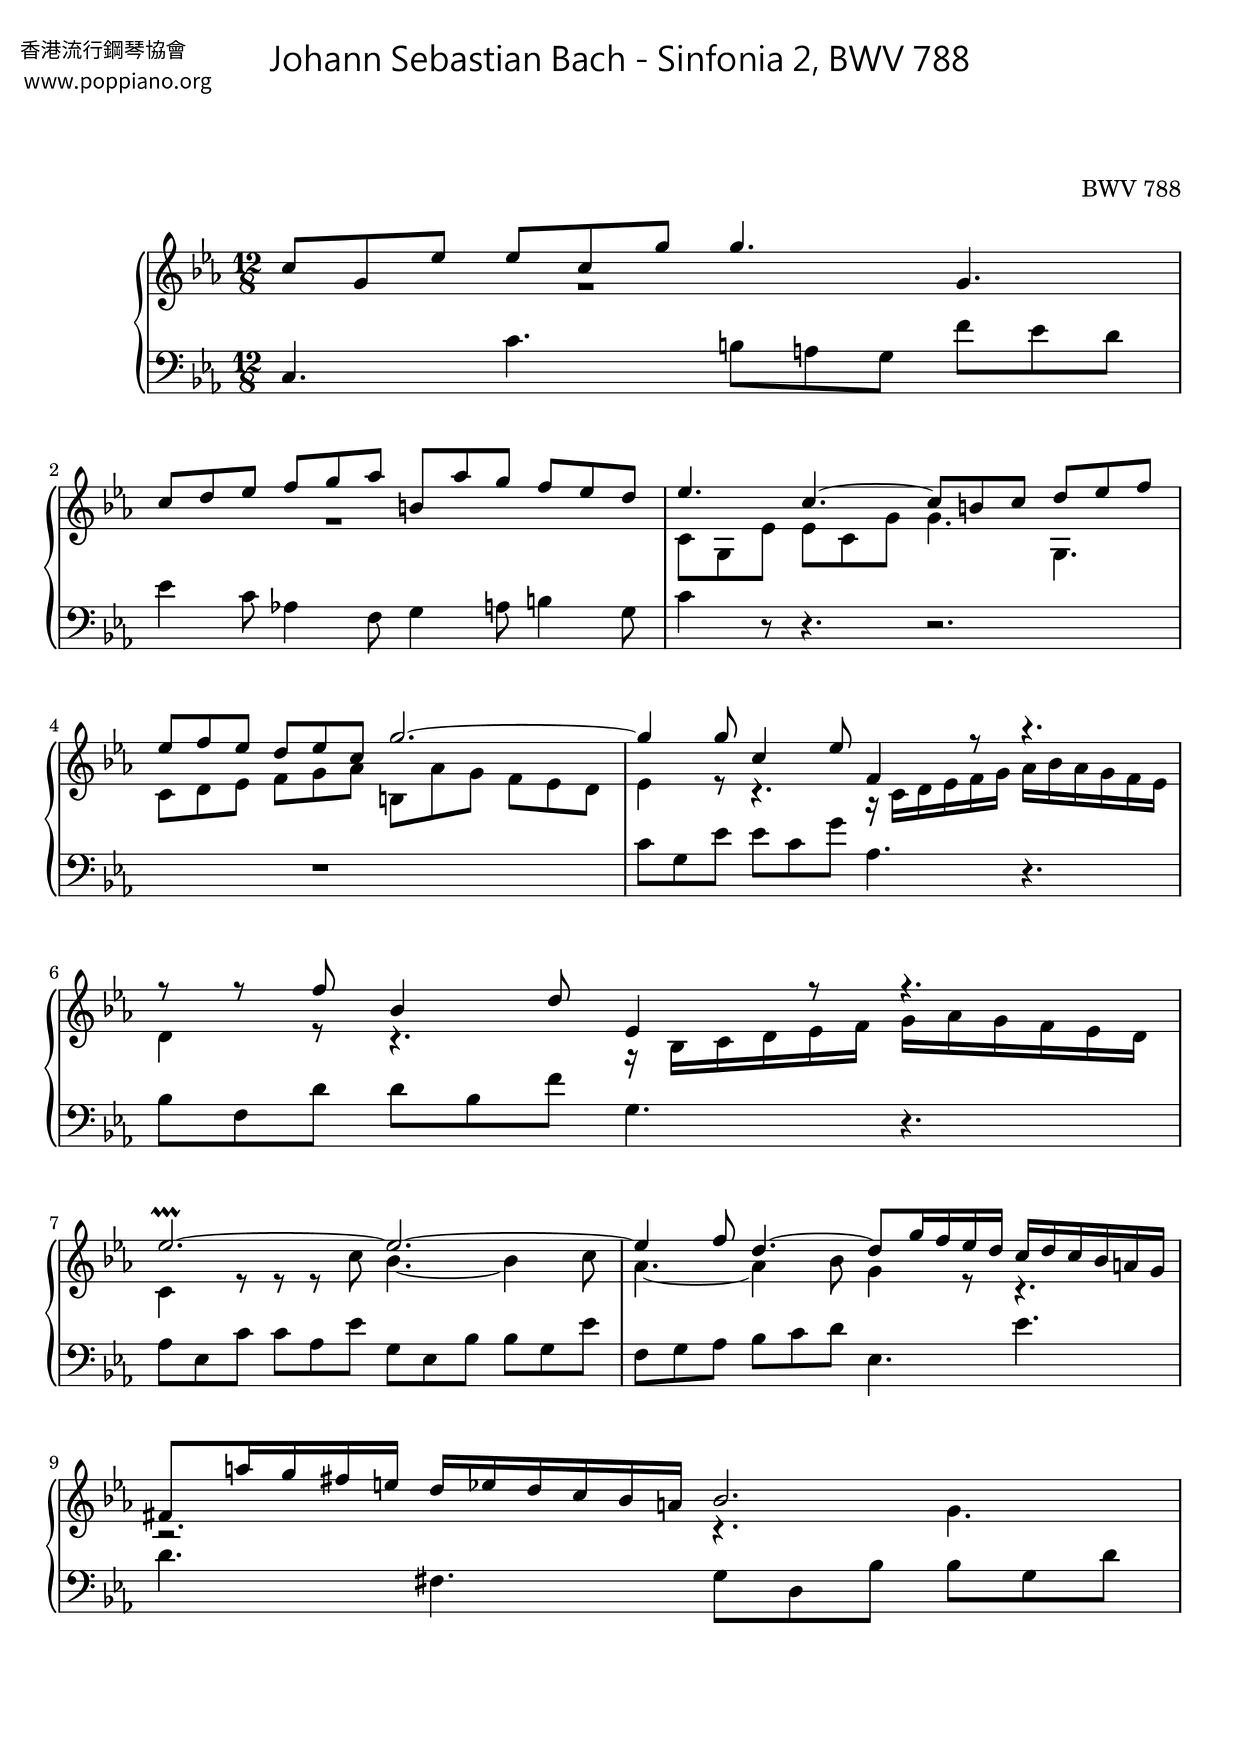 Sinfonia 2, BWV 788ピアノ譜